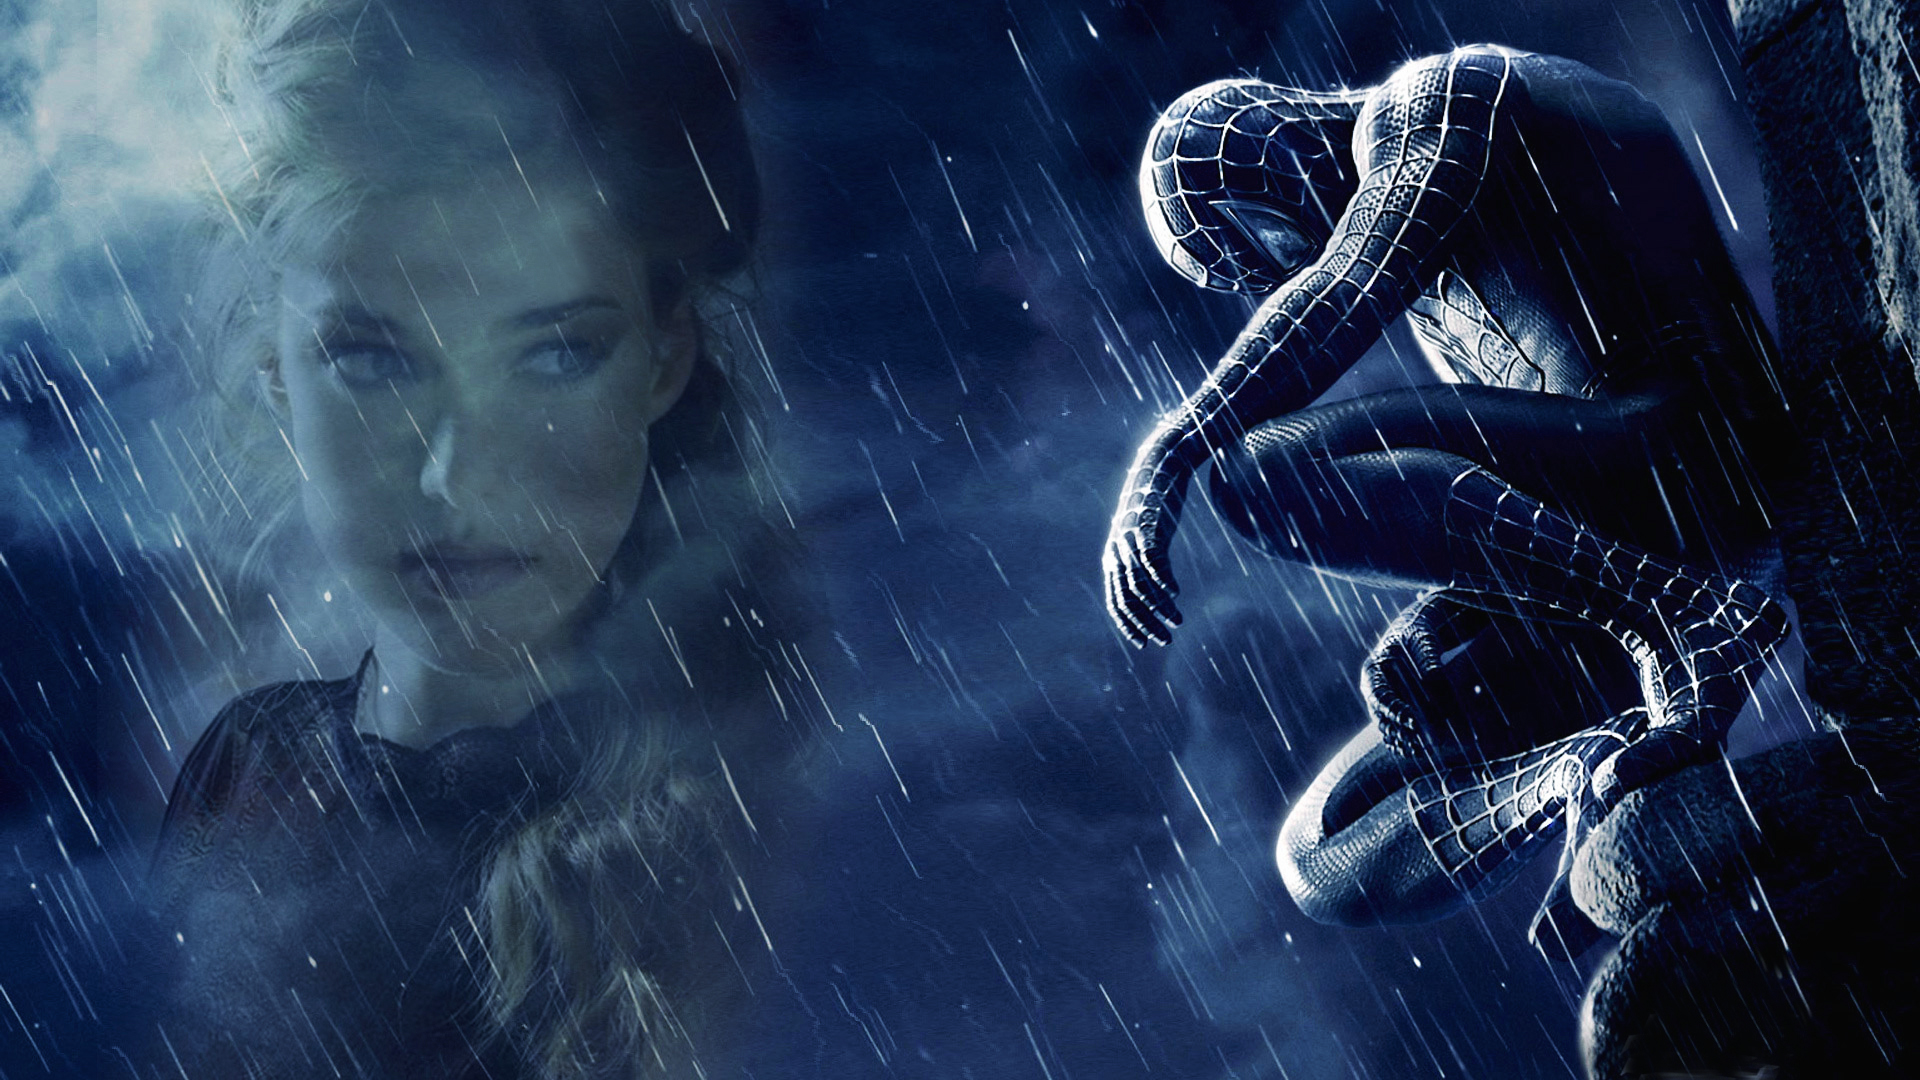 Sophie rain spider man leak. Человек-паук 3 враг в отражении. Человек паук 3 под дождем. Человек-паук 3 враг в отражении Постер. Черный человек паук под дождем.